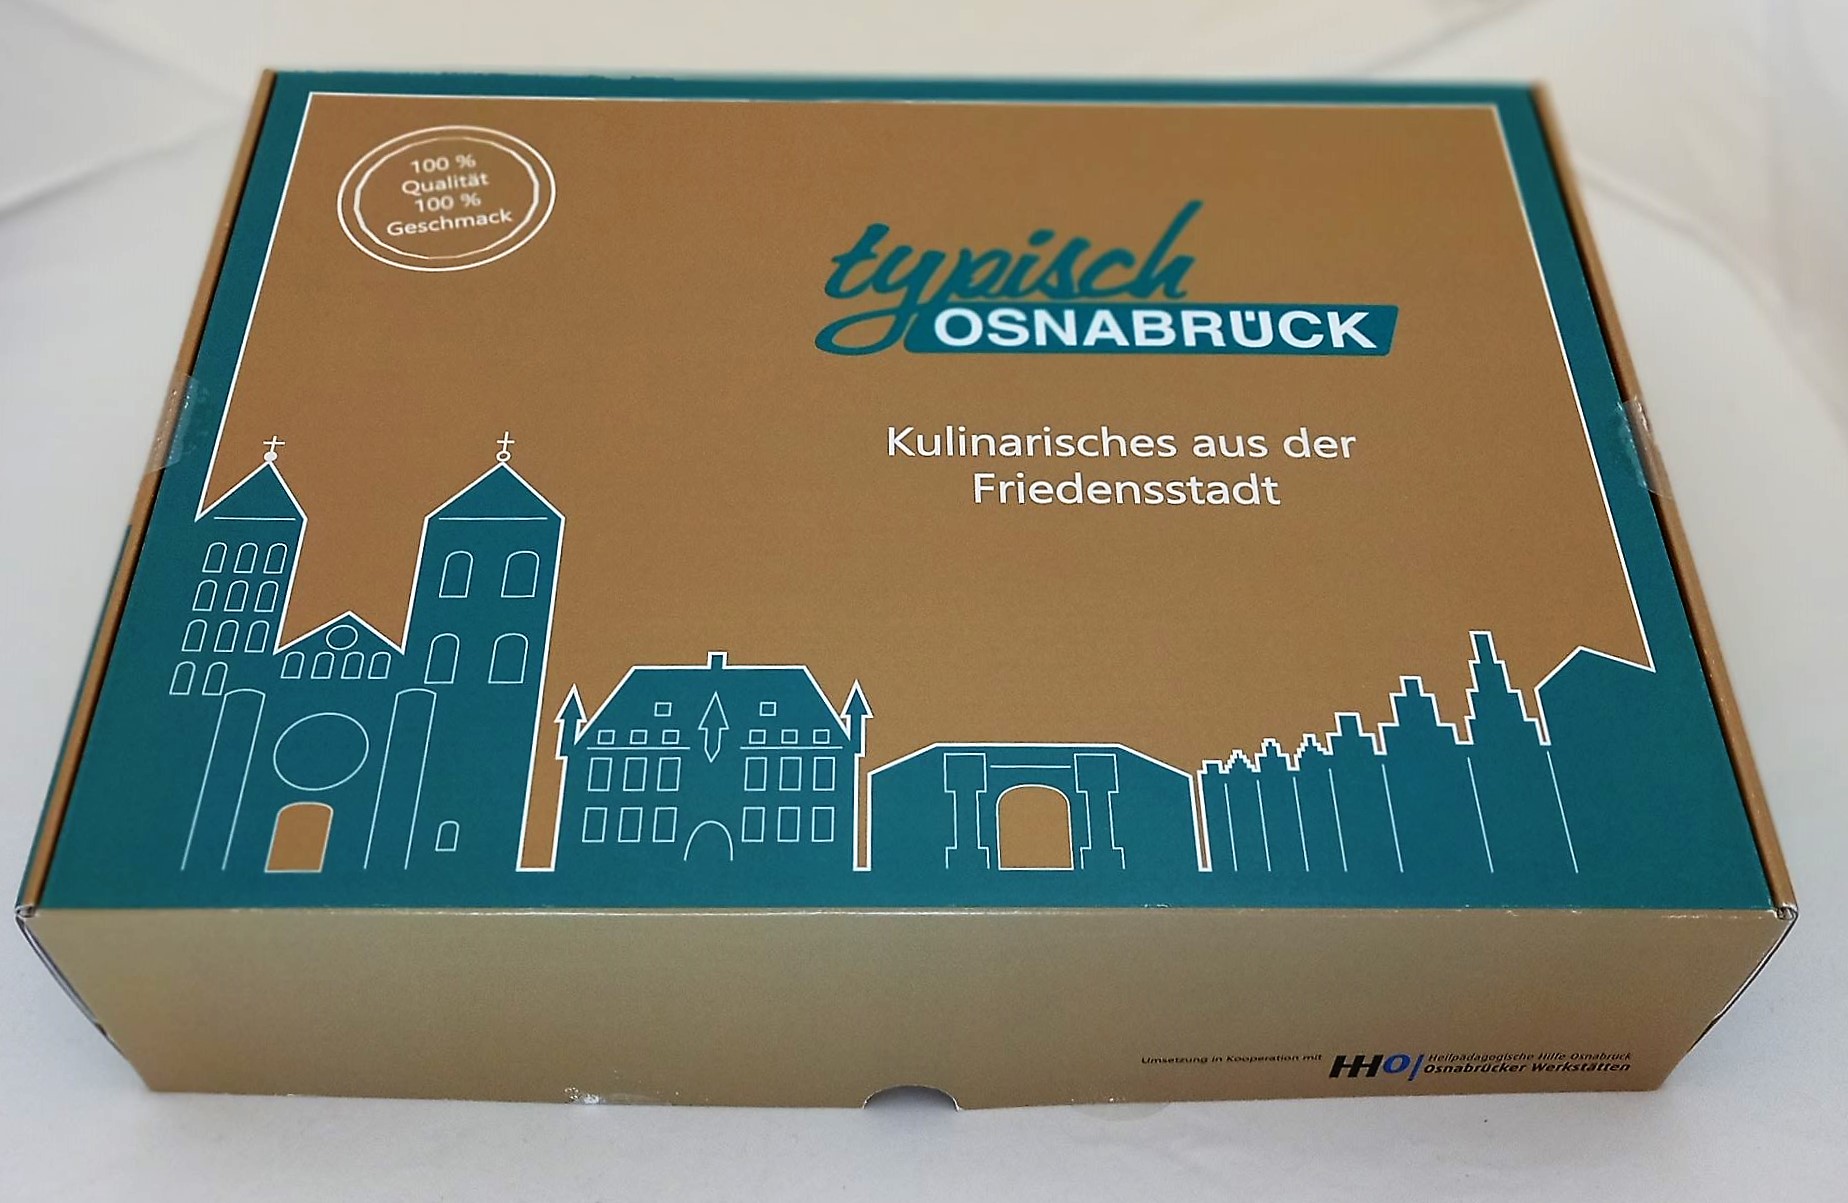 Typisch Osnabrück - Die Geschenkbox